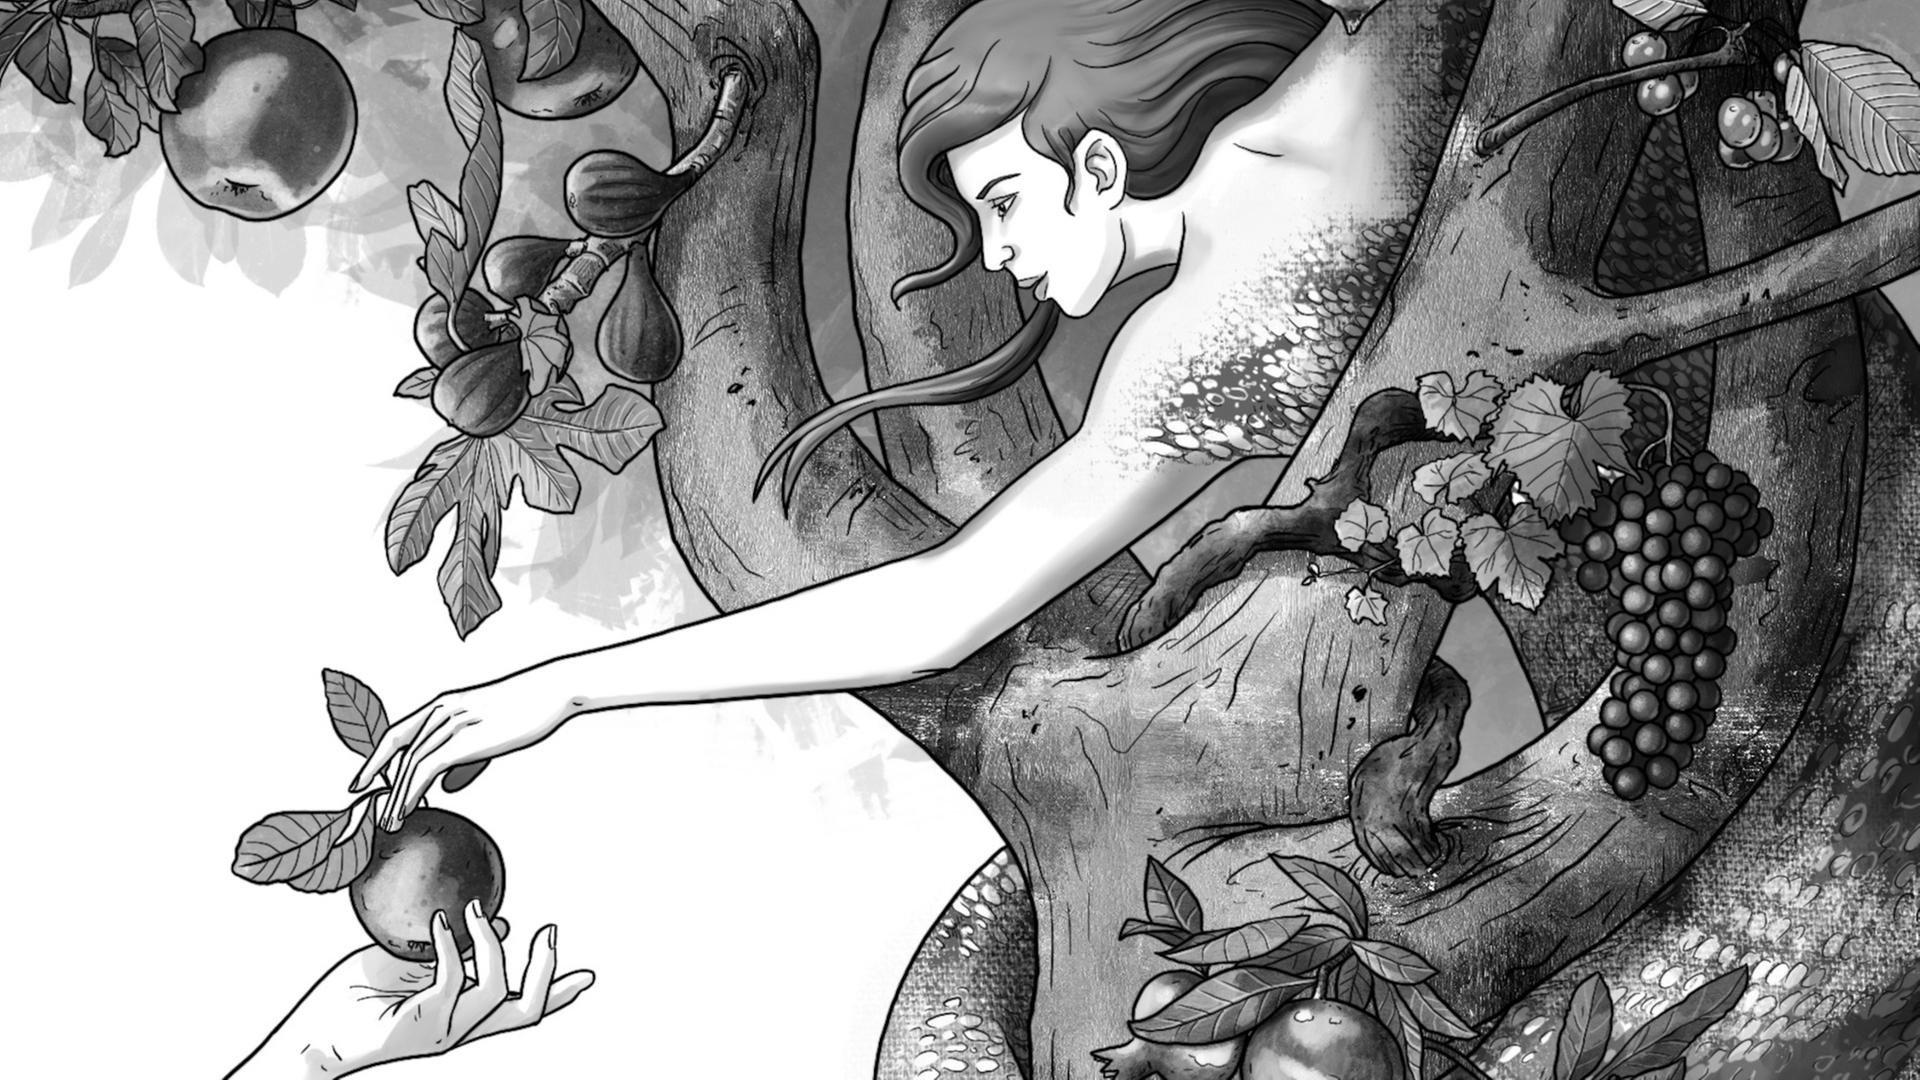 Illustration (Zeichnung): Eine Frauengestalt mit dem Unterleib einer Schlange greift aus einer Baumkrone nach einem Apfel, der ihr gereicht wird.